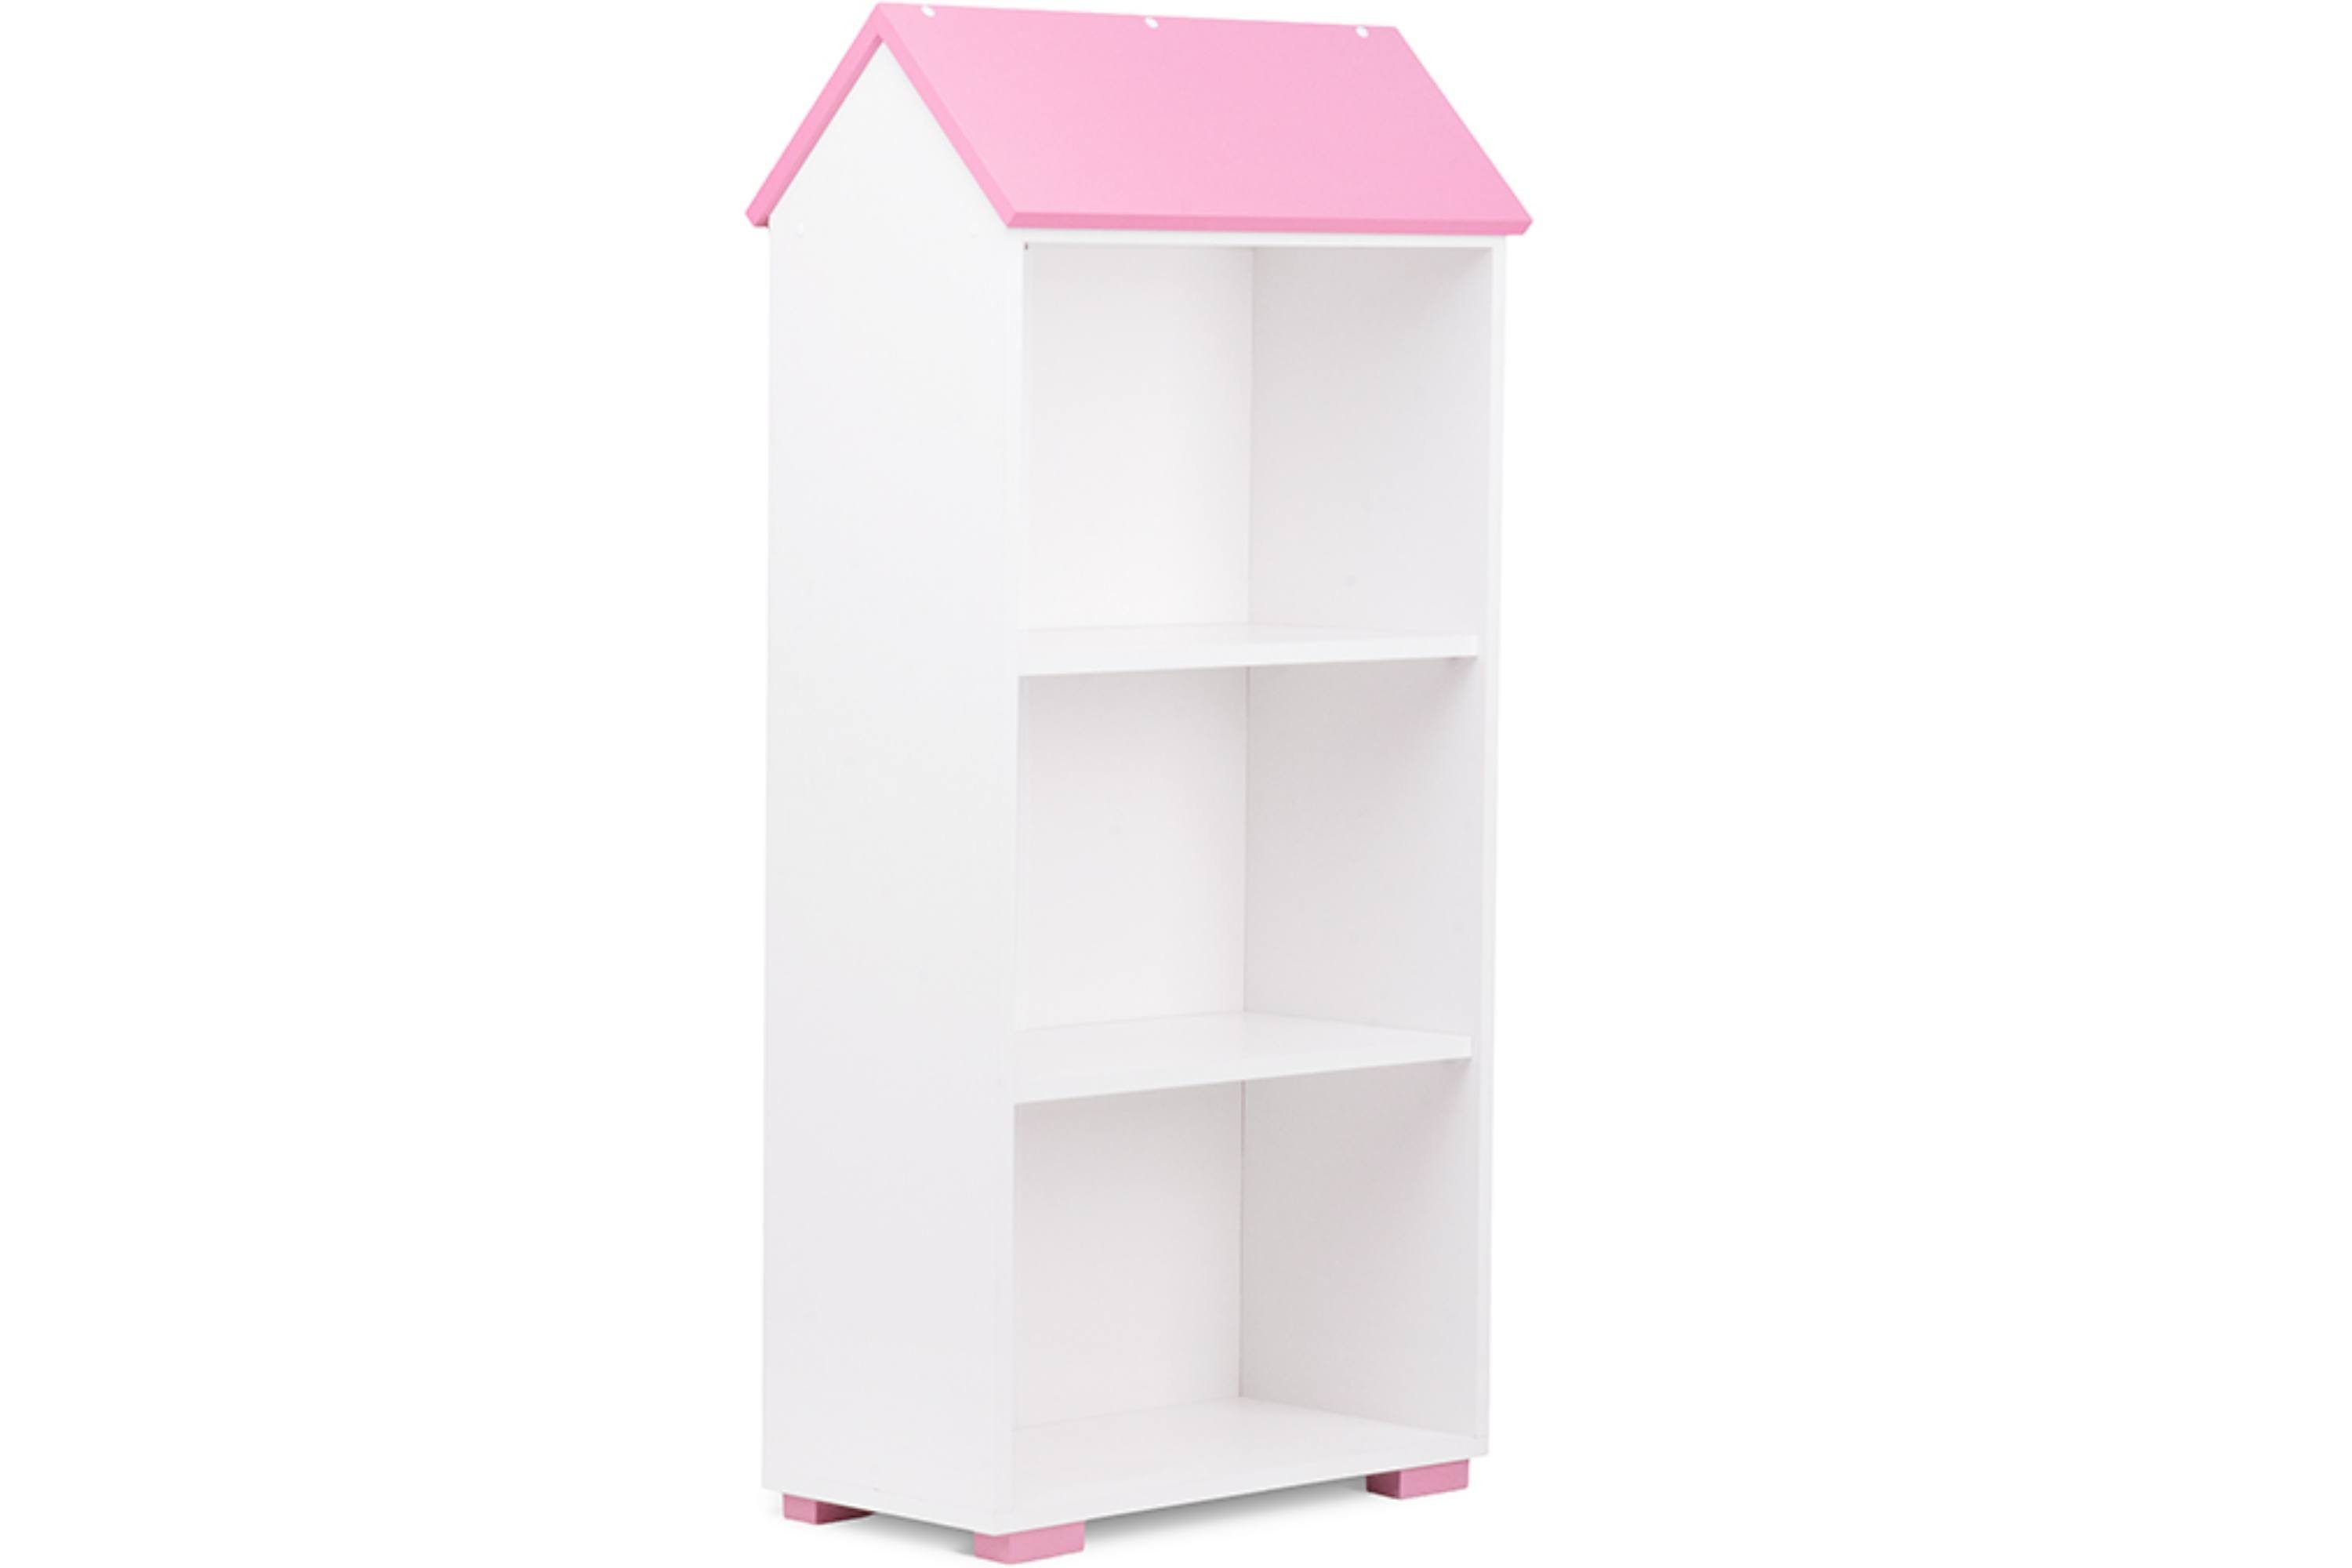 Konsimo Kinderregal PABIS Kinder Bücherregal Hausform, in Pastellfarben, geräumiges Bücherregal für Kinderzimmer weiß/rosa